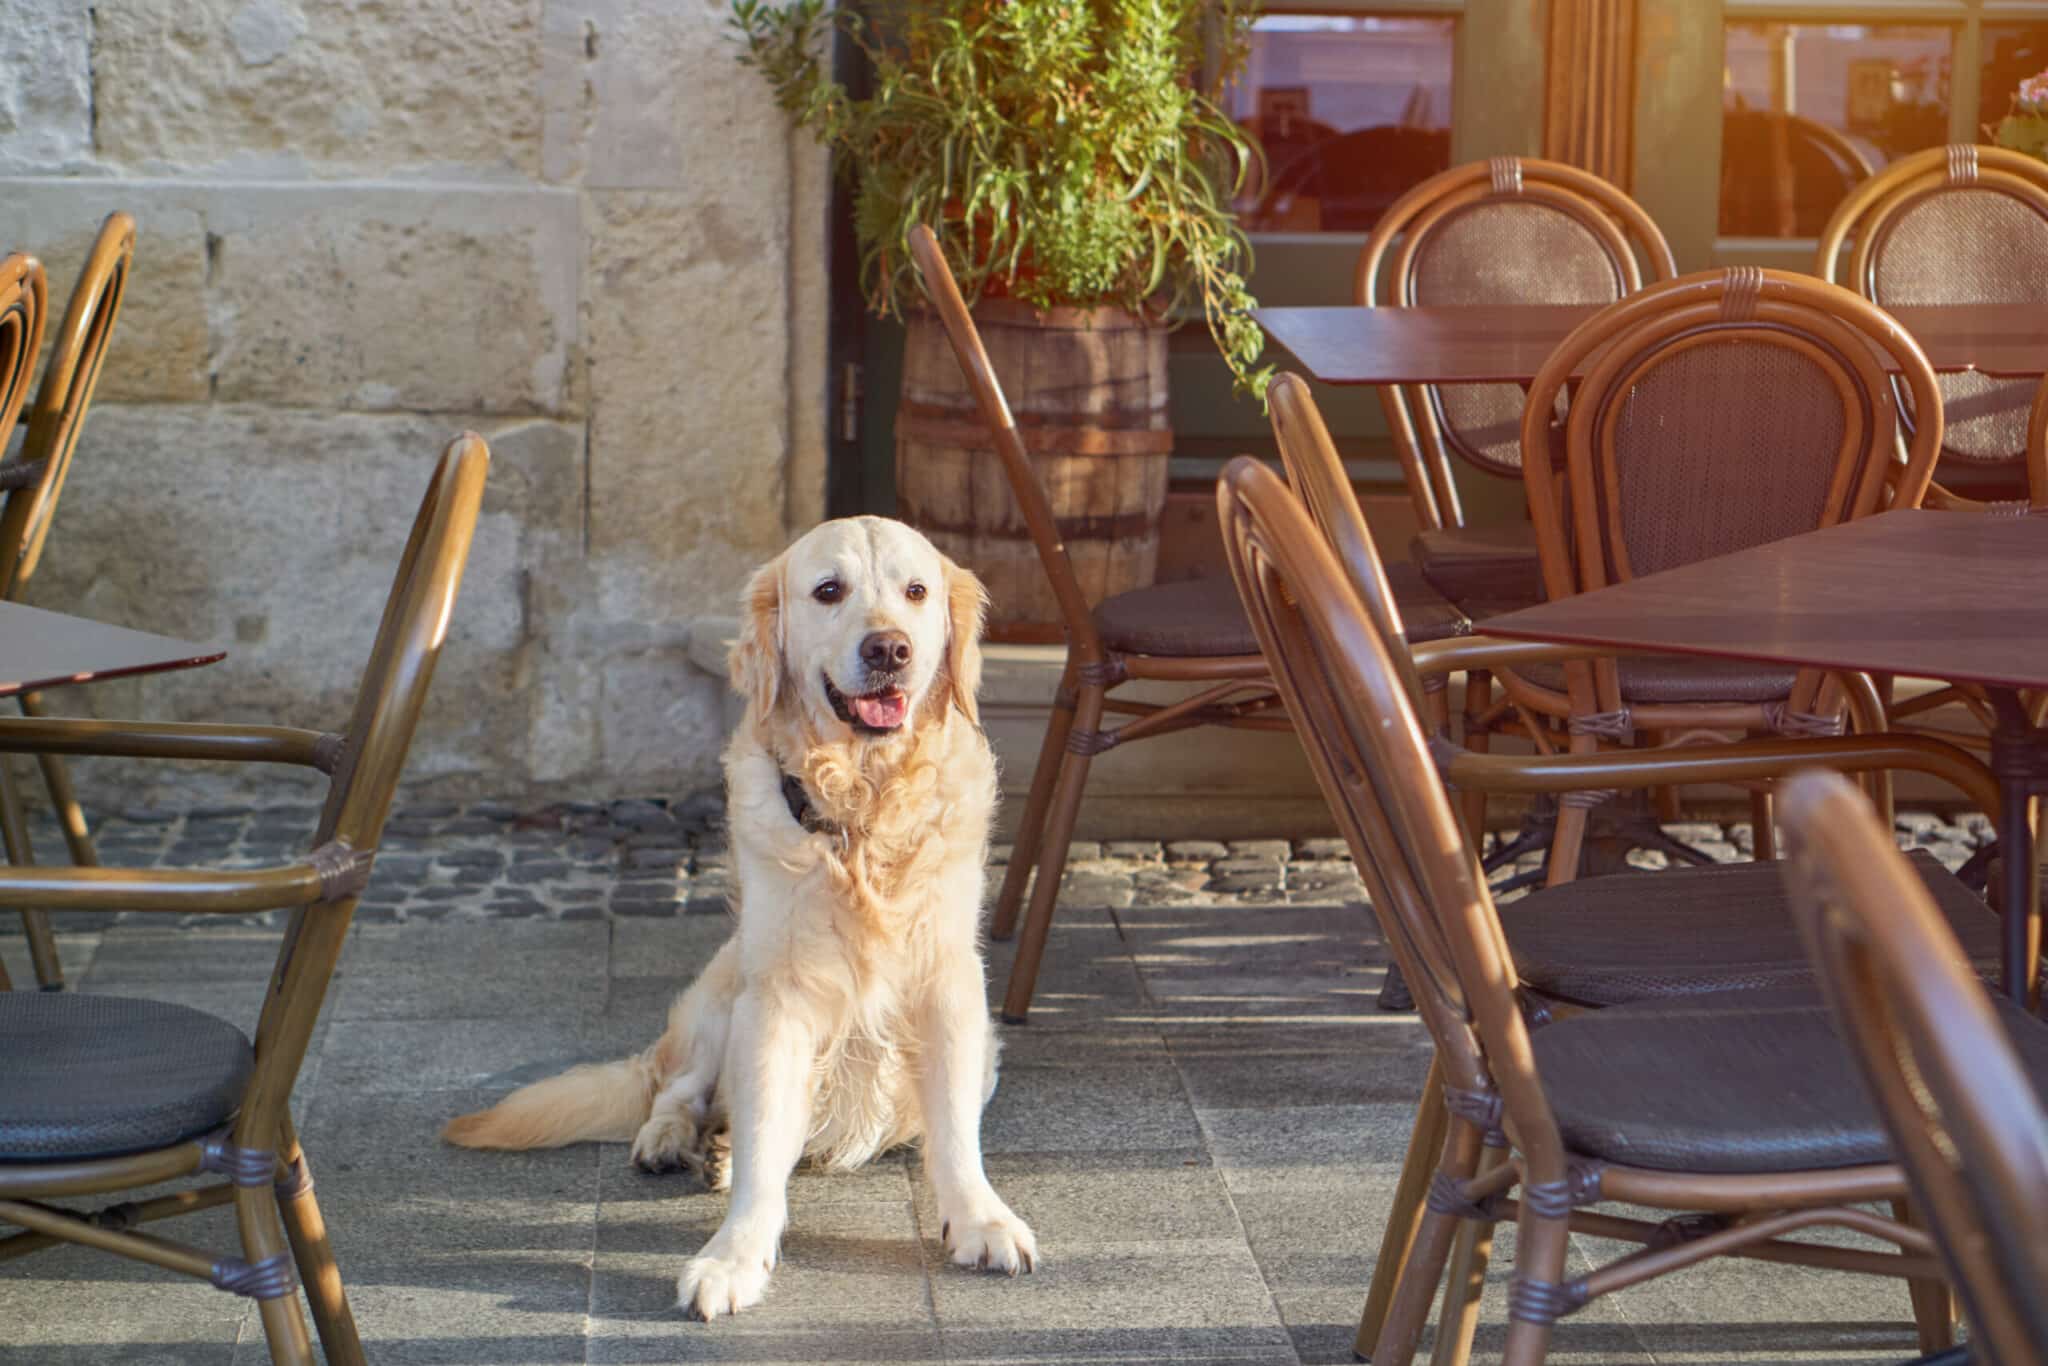 Restaurante Pet Friendly: como criar esse espaço?